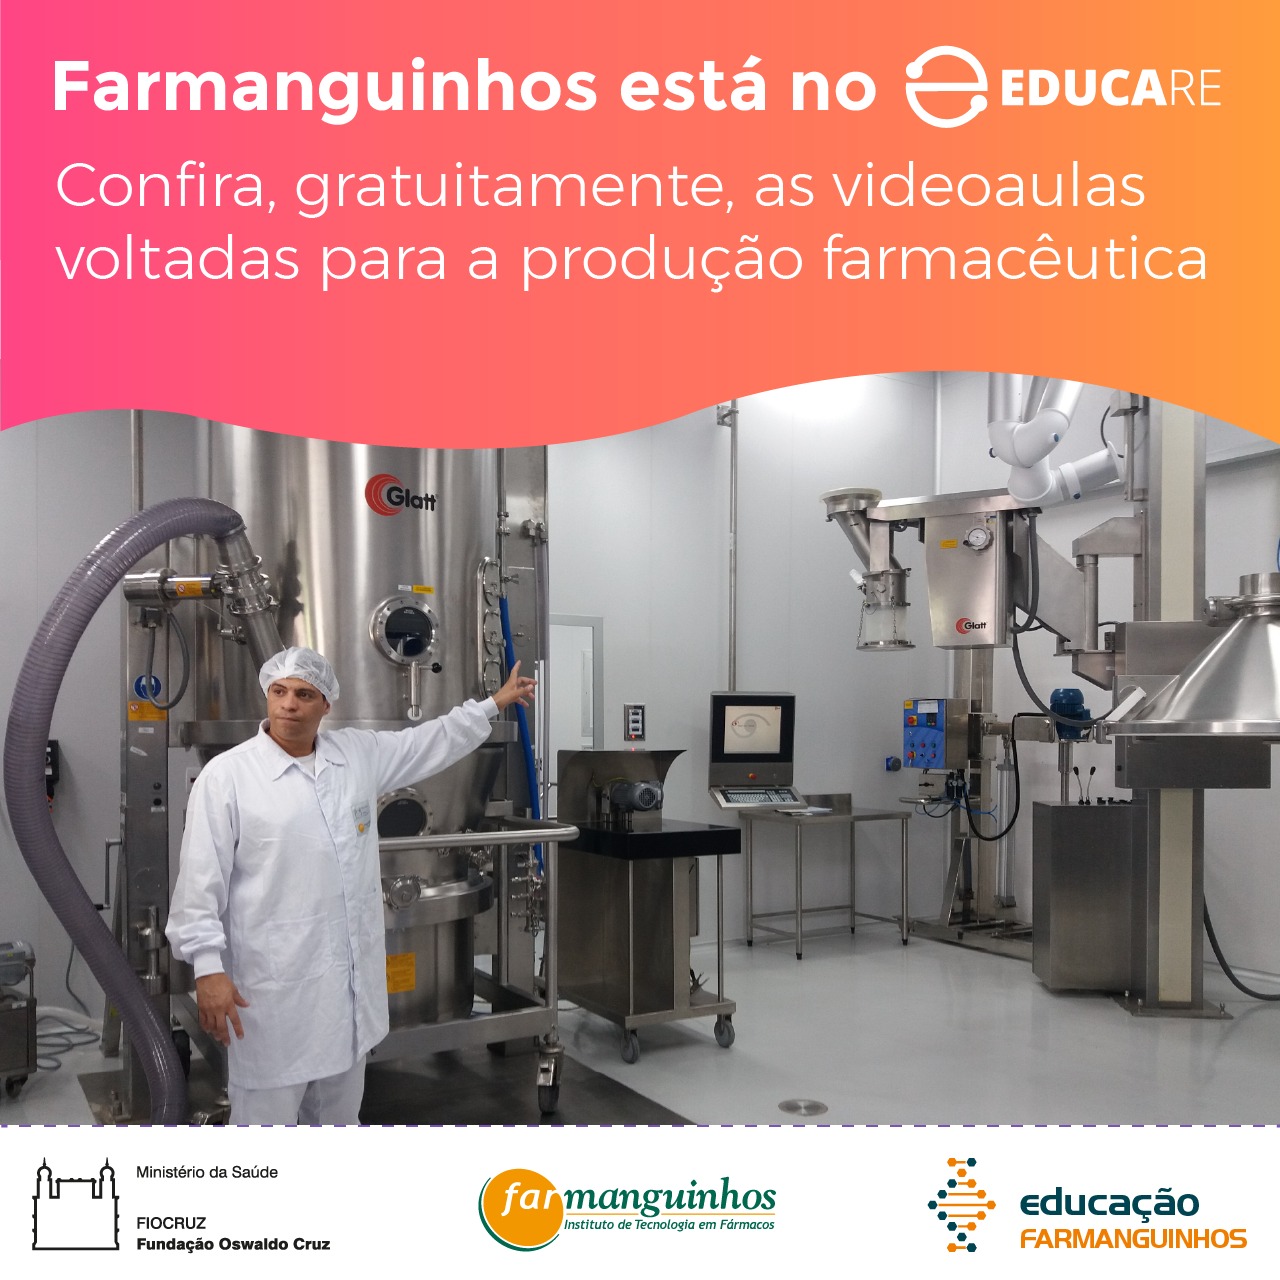 Farmanguinhos disponibiliza conteúdos gratuitos sobre produção farmacêutica